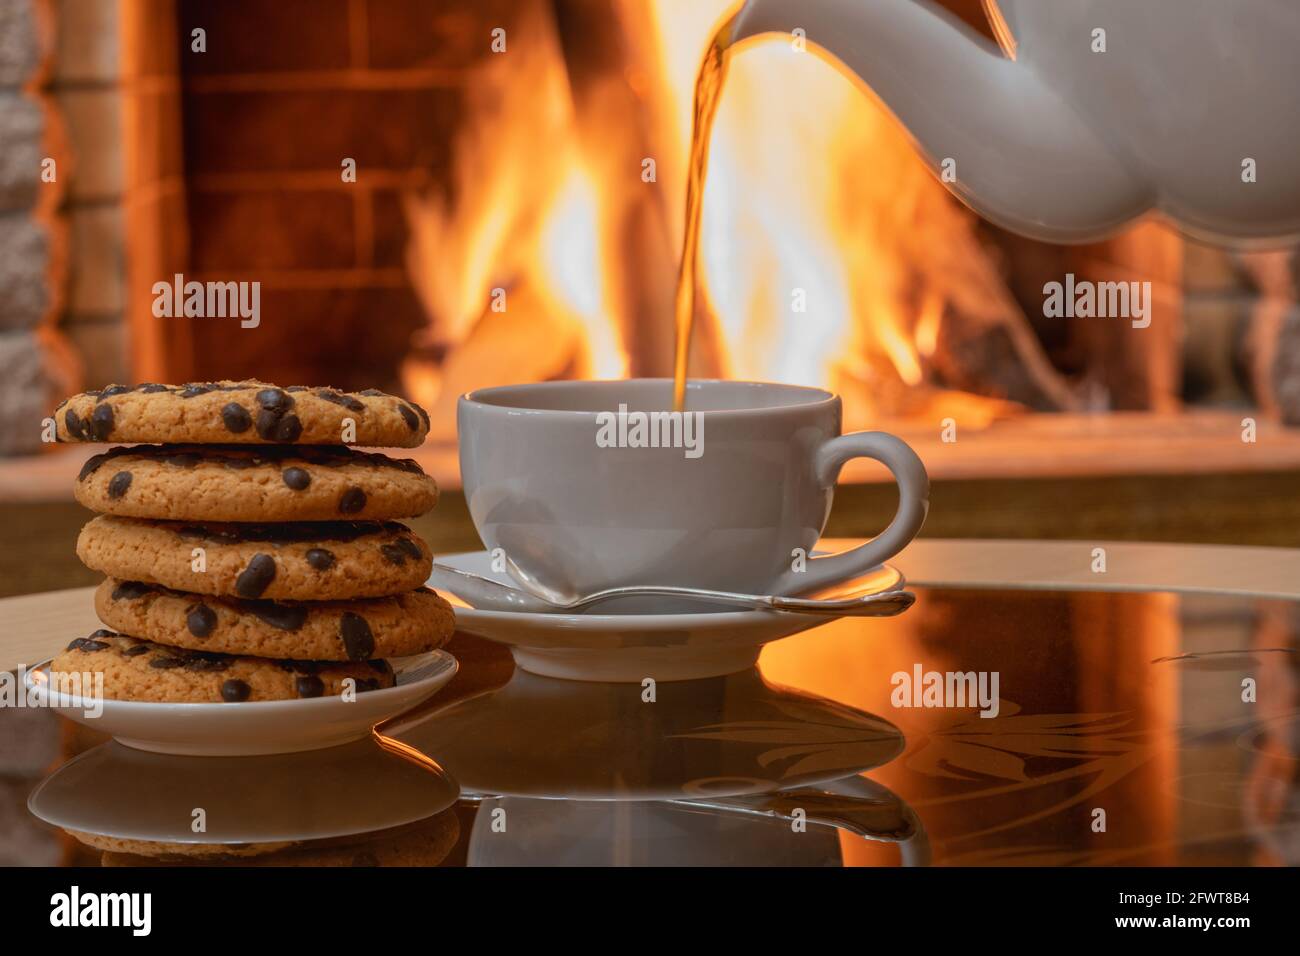 Gemütliche Kamin-Szene, Tee fließt in weiße Tasse, Kekse auf einem Teller, Reflexion von einem Feuer auf einem Glastisch. Stockfoto